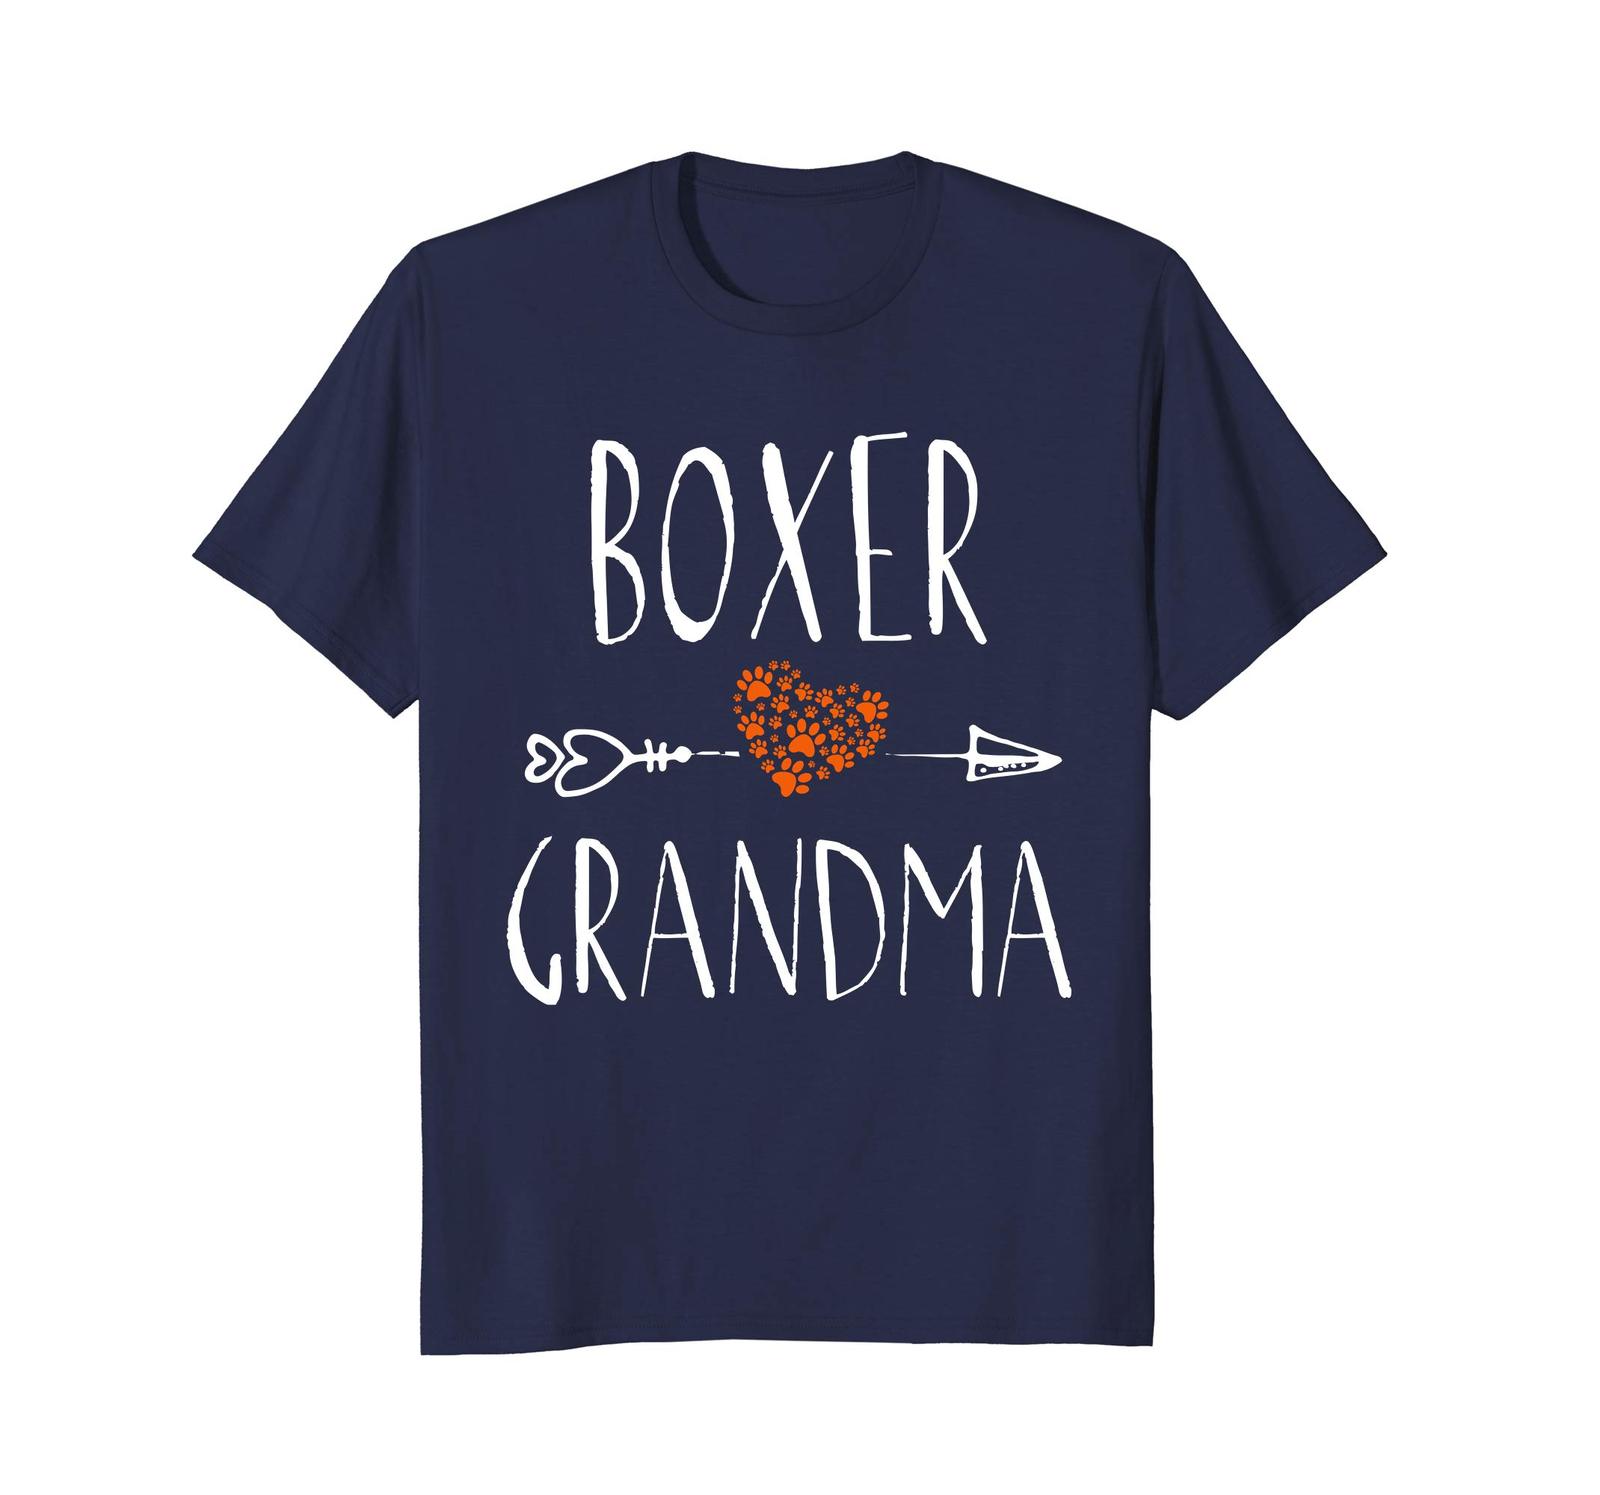 Dog Fashion - BOXER Grandma T Shirt Womens Funny Dog Lover Tshirts Men